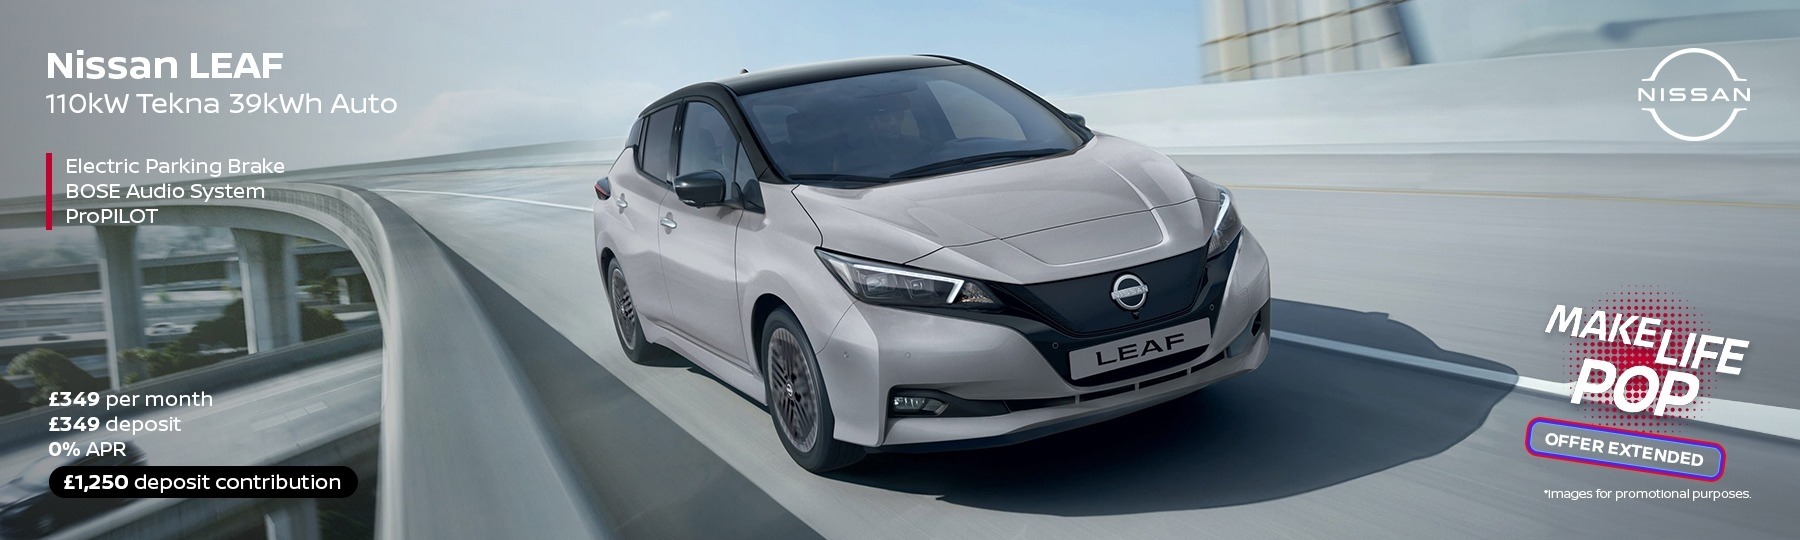 Nissan LEAF New Car Offer